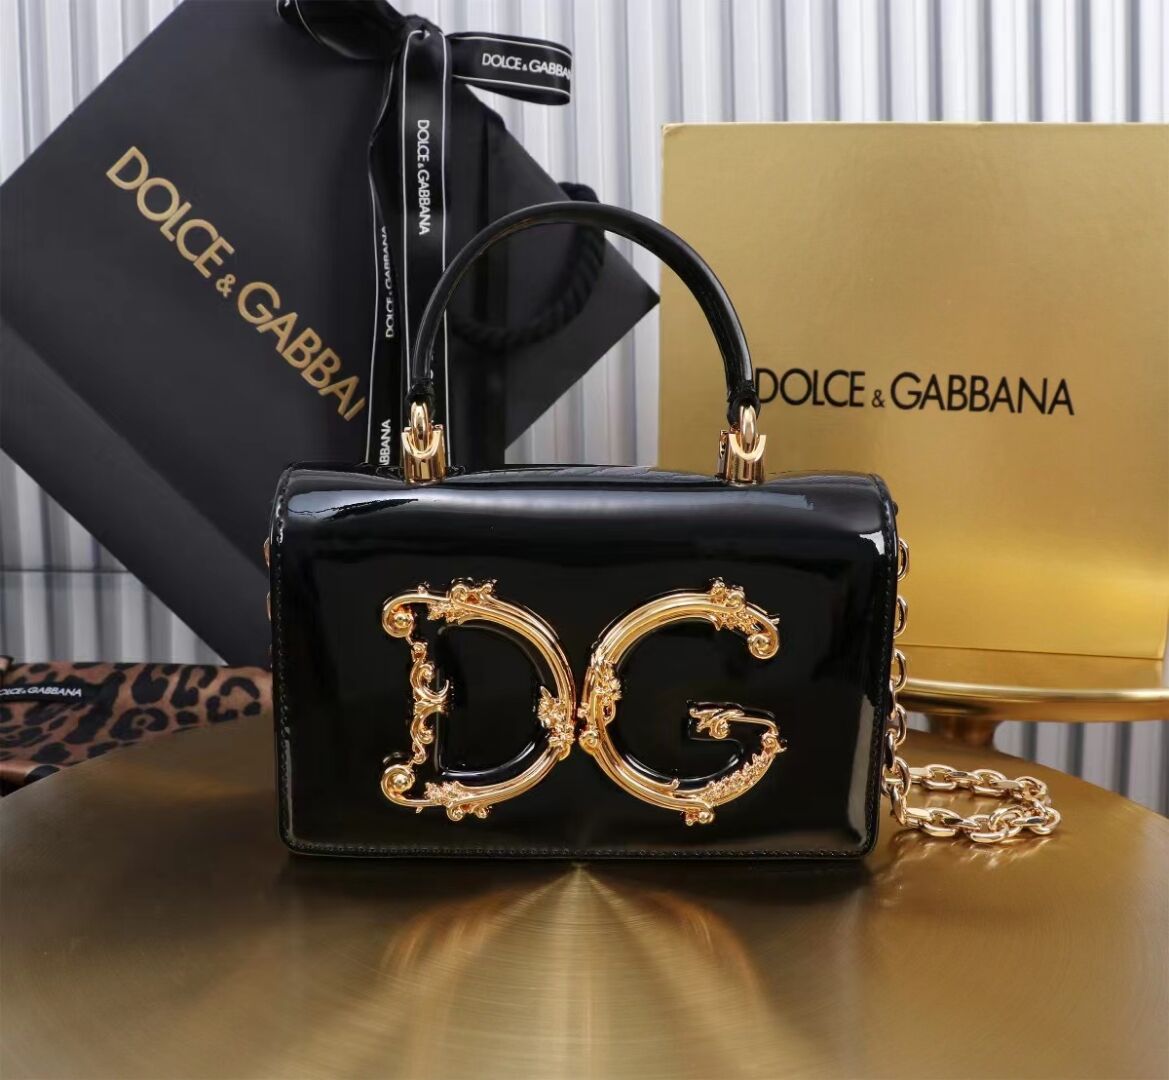 Dolce & Gabbana Patent leather Shoulder Bag G6504 black